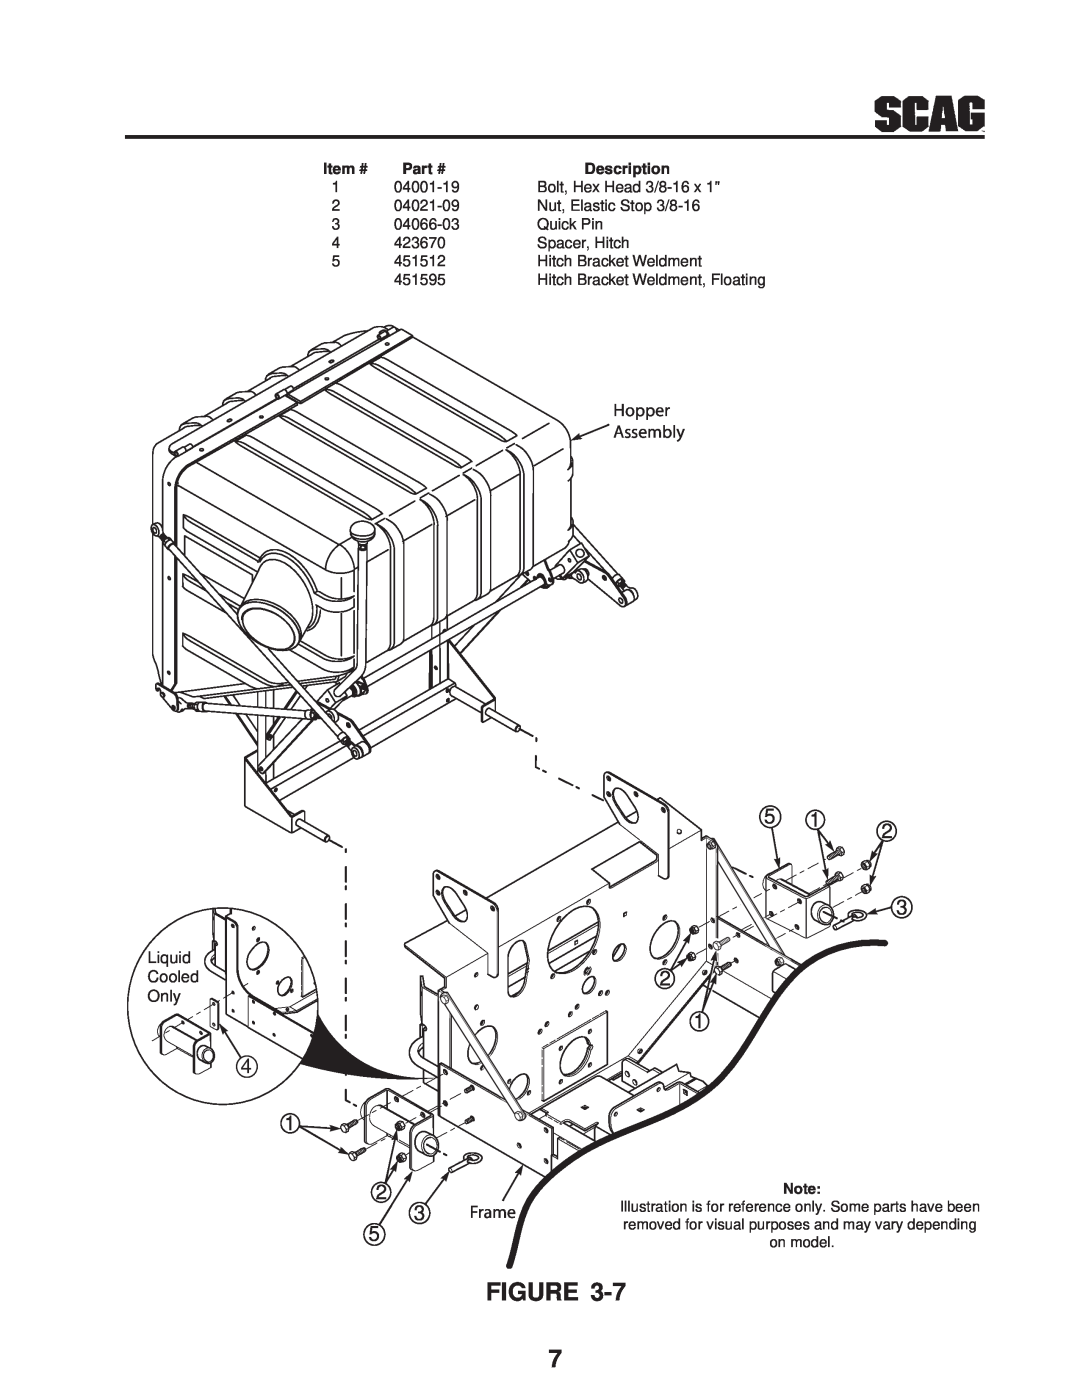 Scag Power Equipment GC-STT-CSV manual Hopper Assembly, Frame, Description 